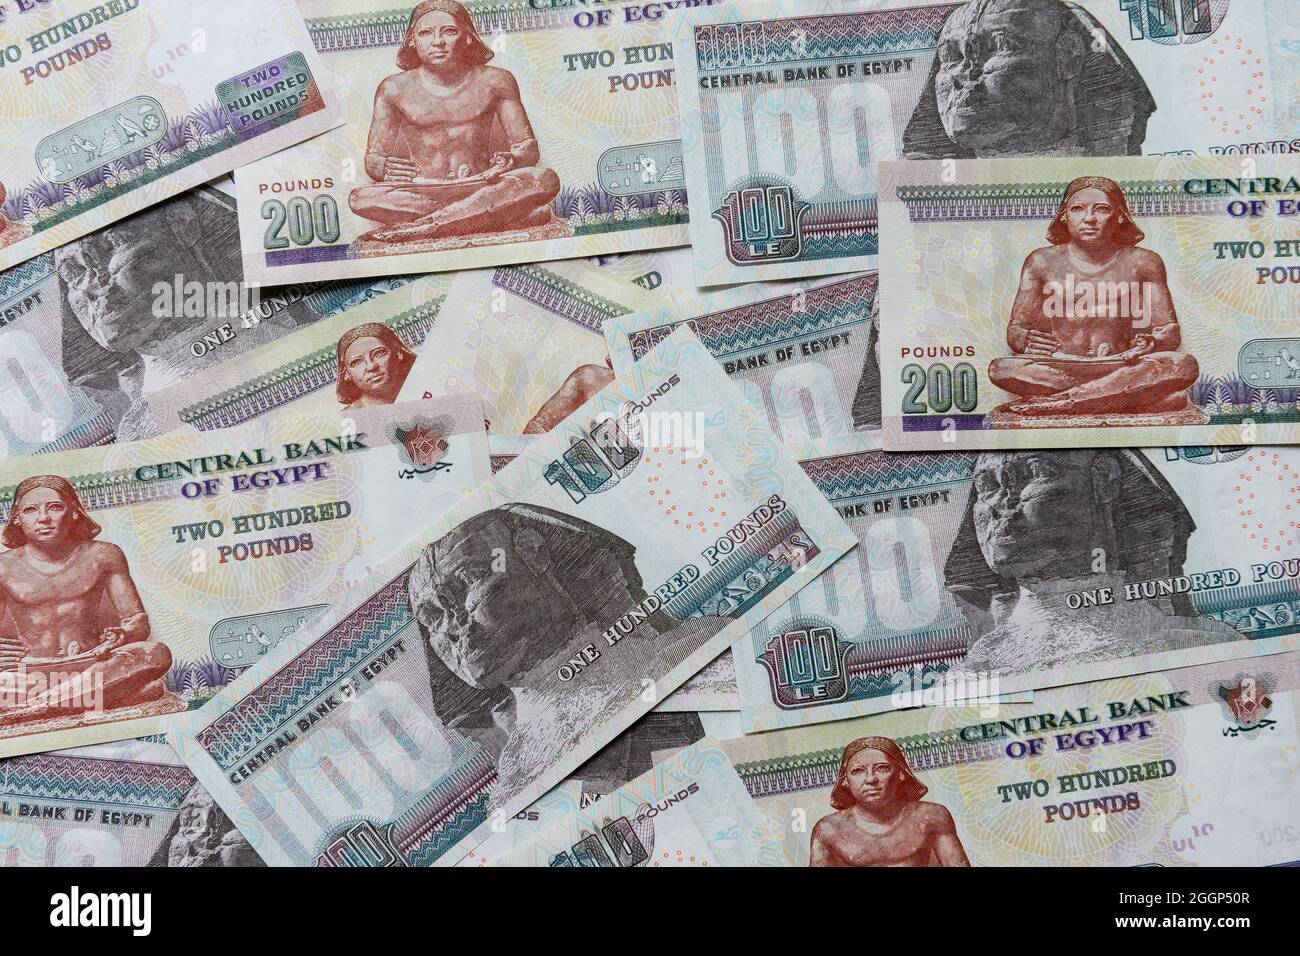 EGITTO, banconote in sterlina, immagine Sfinge di Gizeh / ÄGYPTEN, ägyptische Pound Bannoden, Bild Große Sphinx von Gizeh Foto Stock